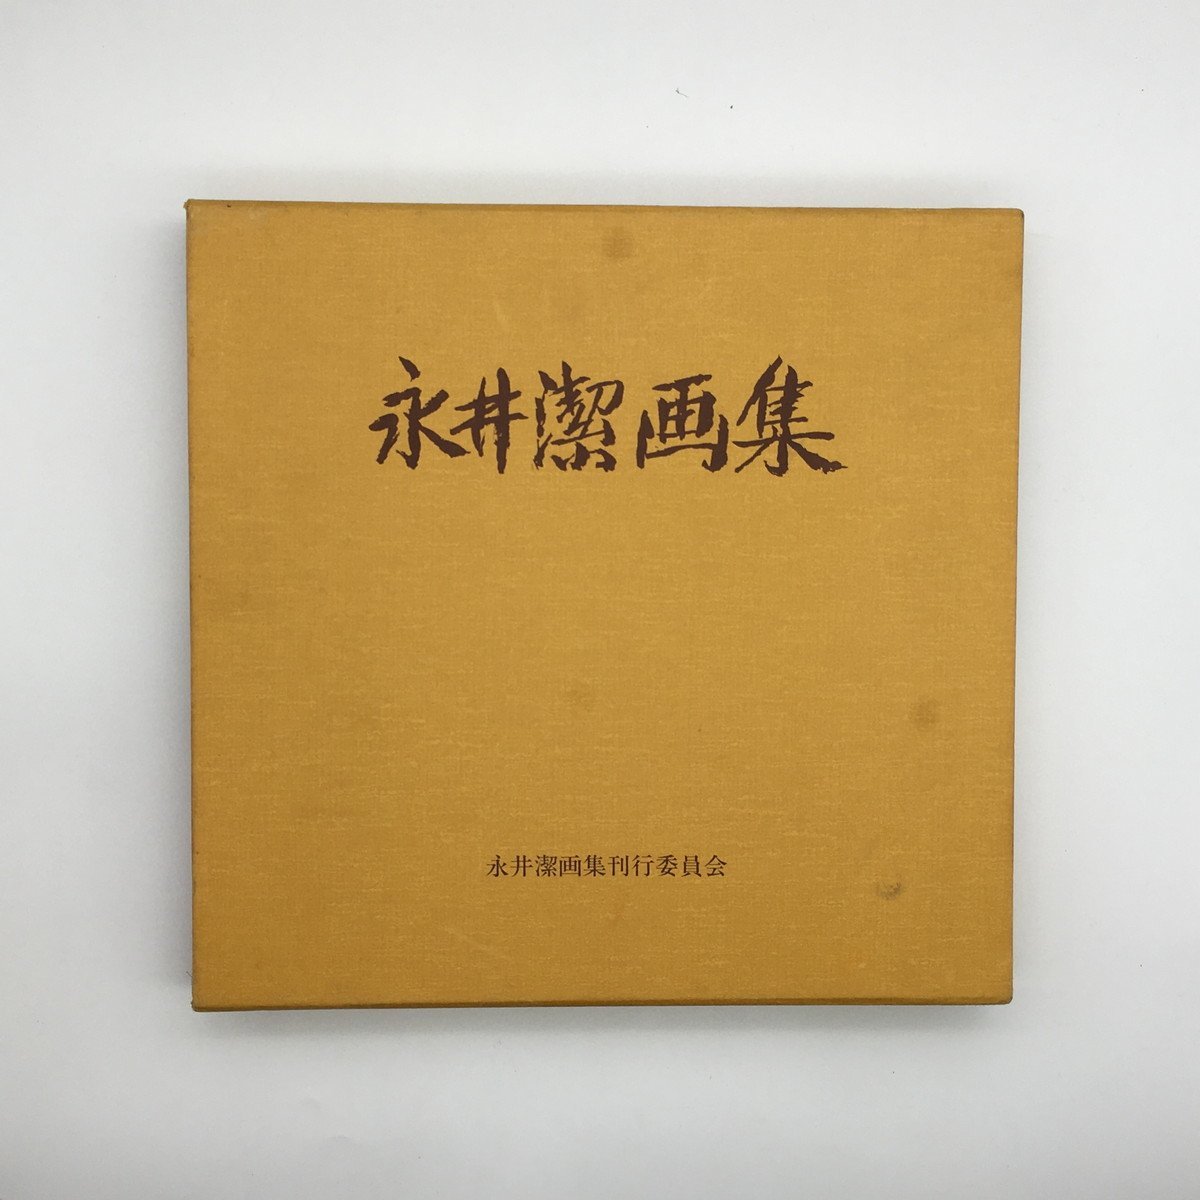 हस्ताक्षरित कियोशी नागाई कला संग्रह कार्यों का संग्रह हस्ताक्षर, चित्रकारी, कला पुस्तक, संग्रह, सूची